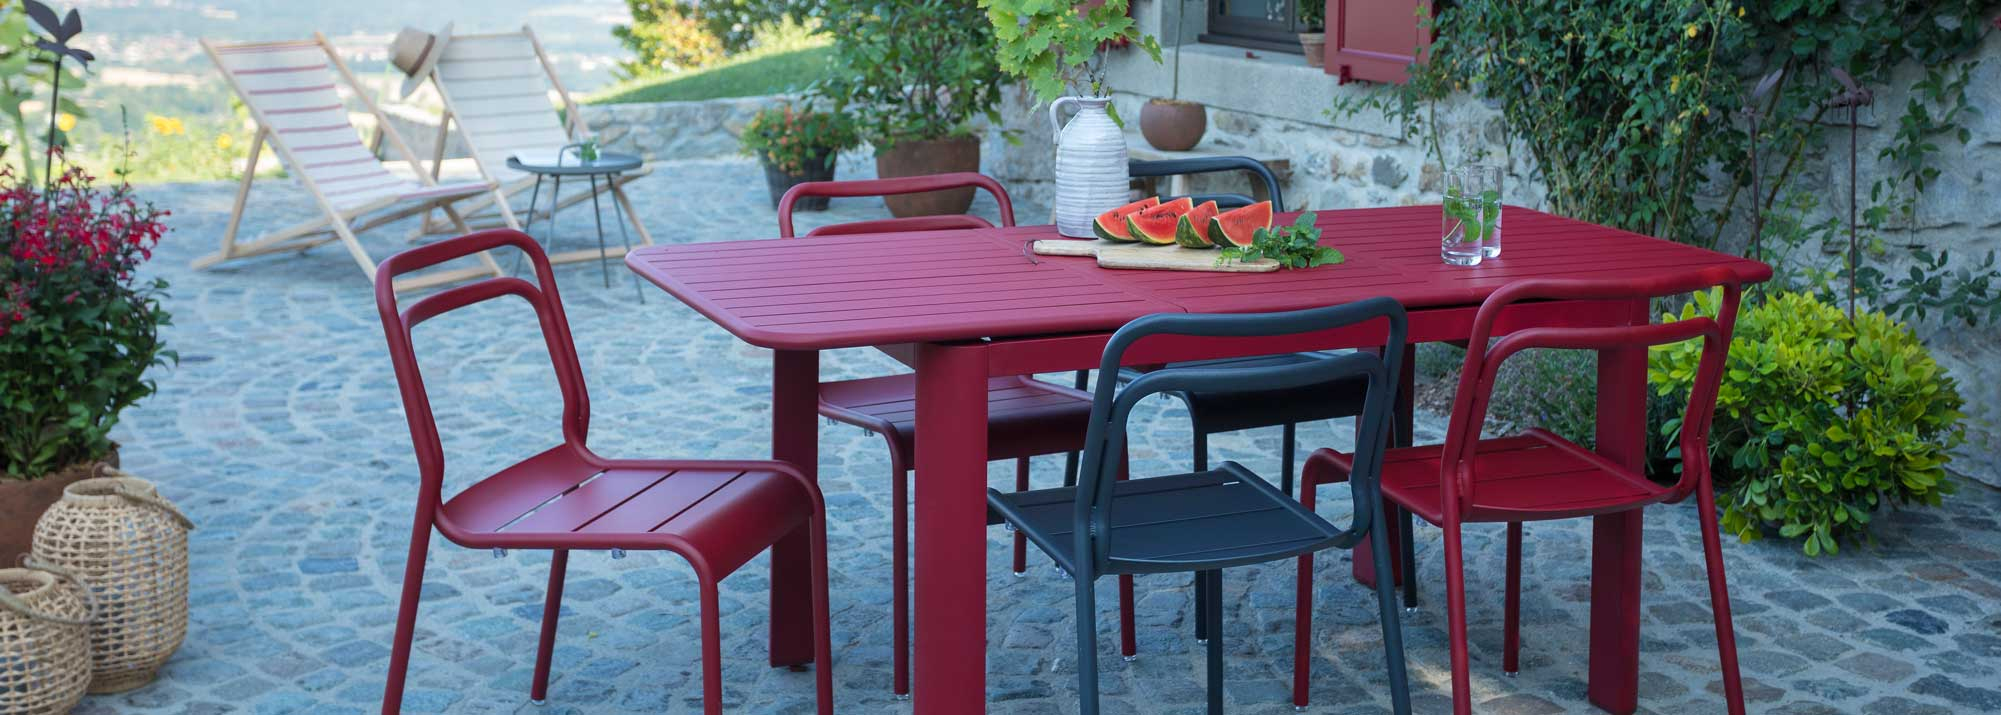 Table De Jardin : Botanic®, Tables De Jardin En Aluminium ... pour Mobilier De Jardin Coloré